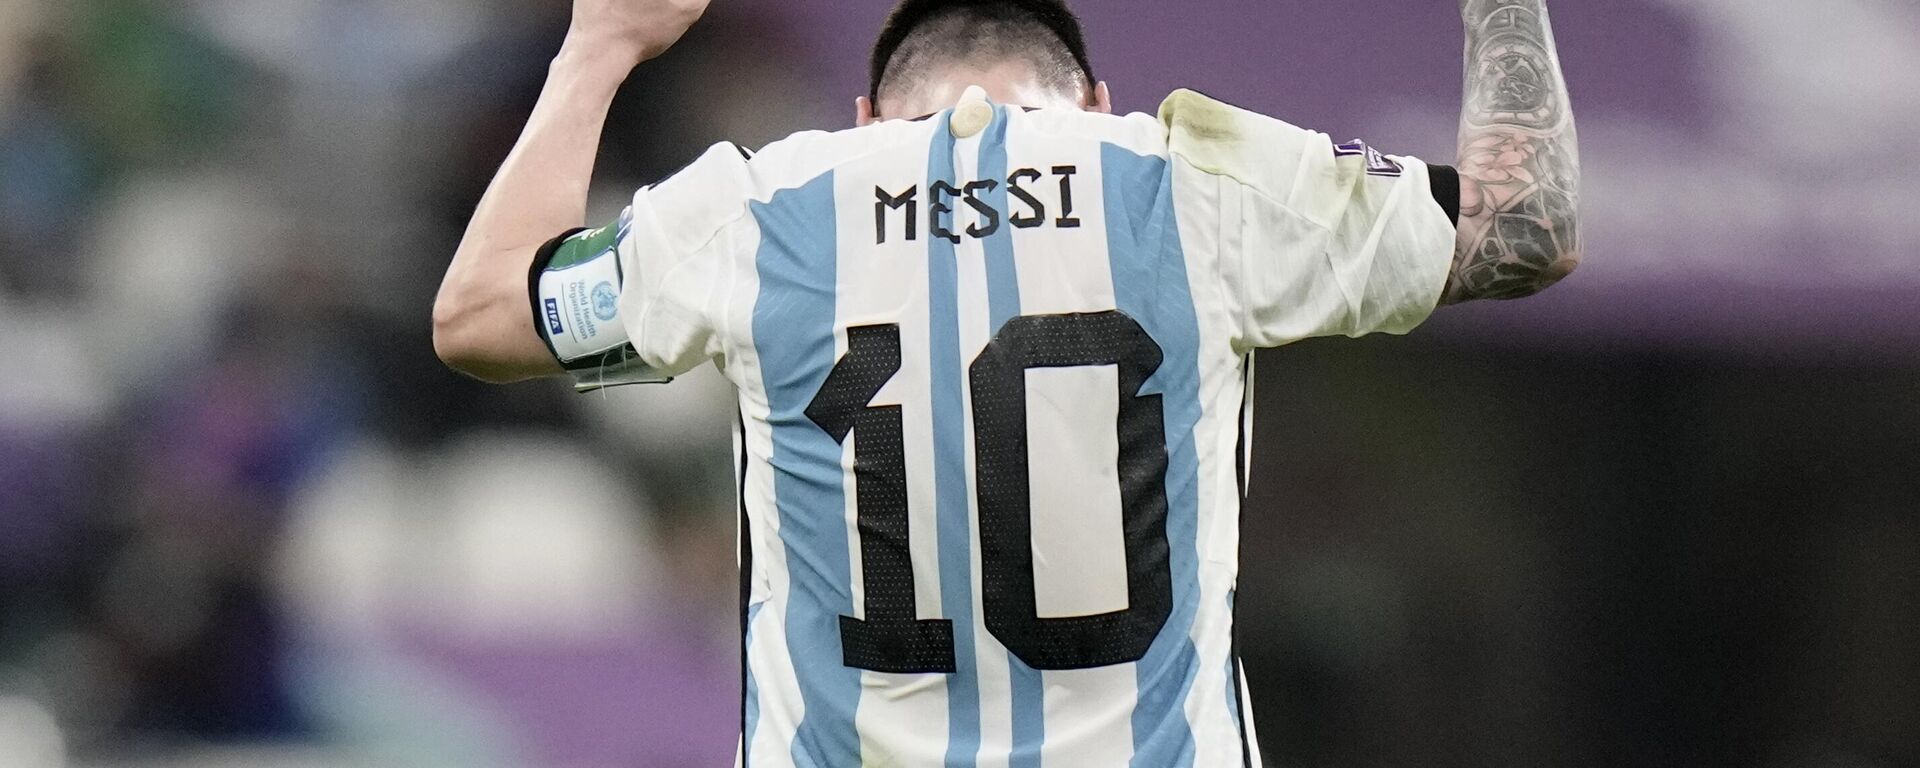 Lionel Messi reacciona al pitido final del partido de fútbol del entre Argentina y México, 26 de noviembre de 2022 - Sputnik Mundo, 1920, 15.12.2022